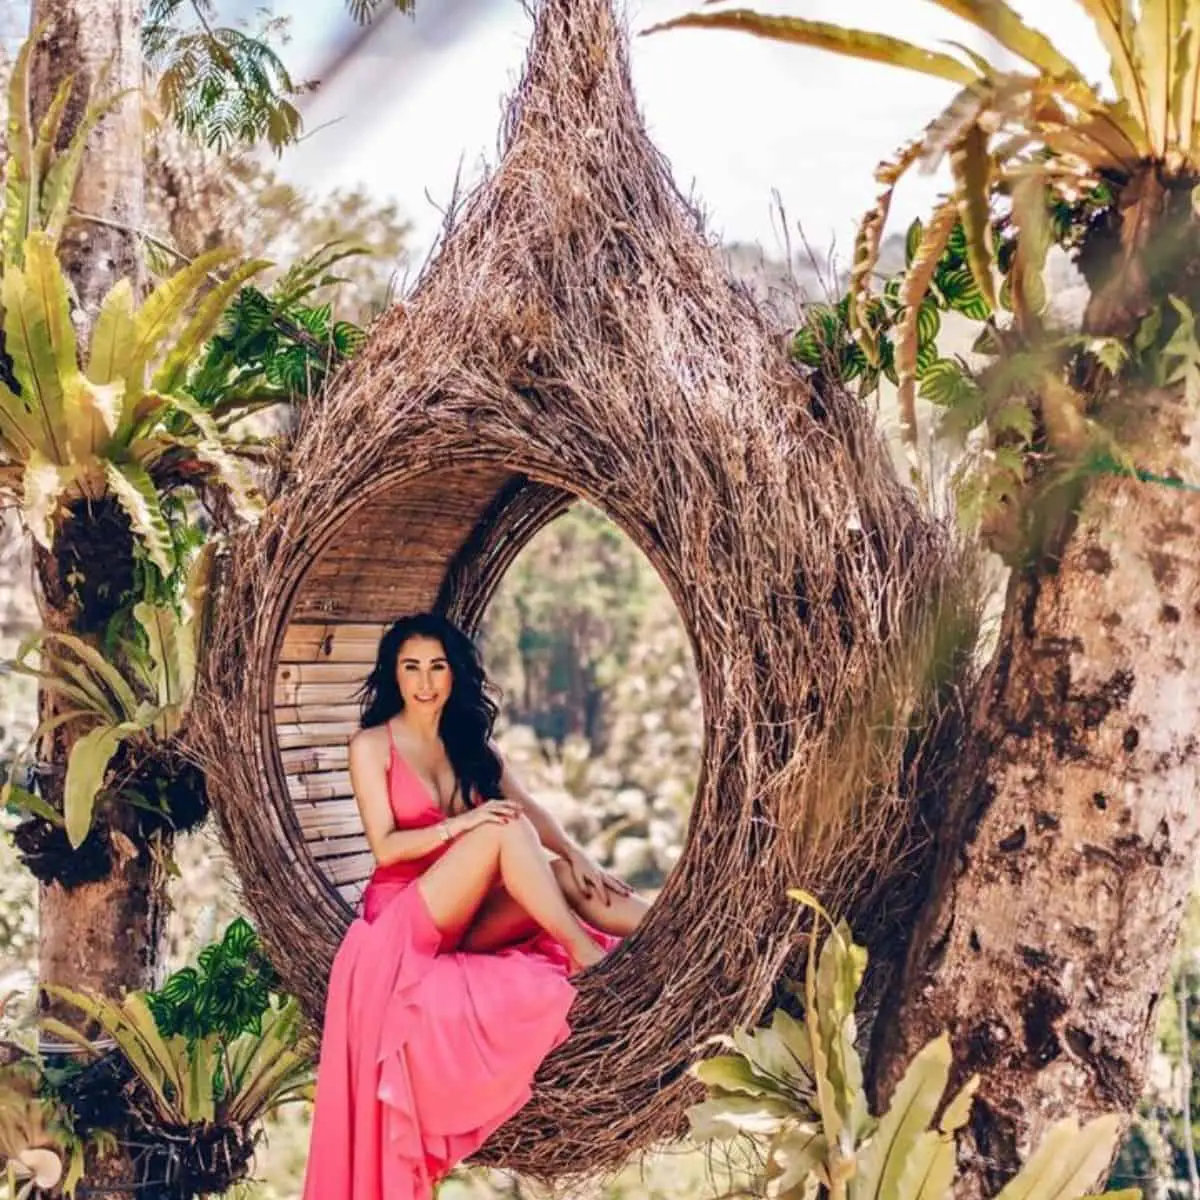 Gorgeous woman posing in Bali Swing Pioneer’s bird nest